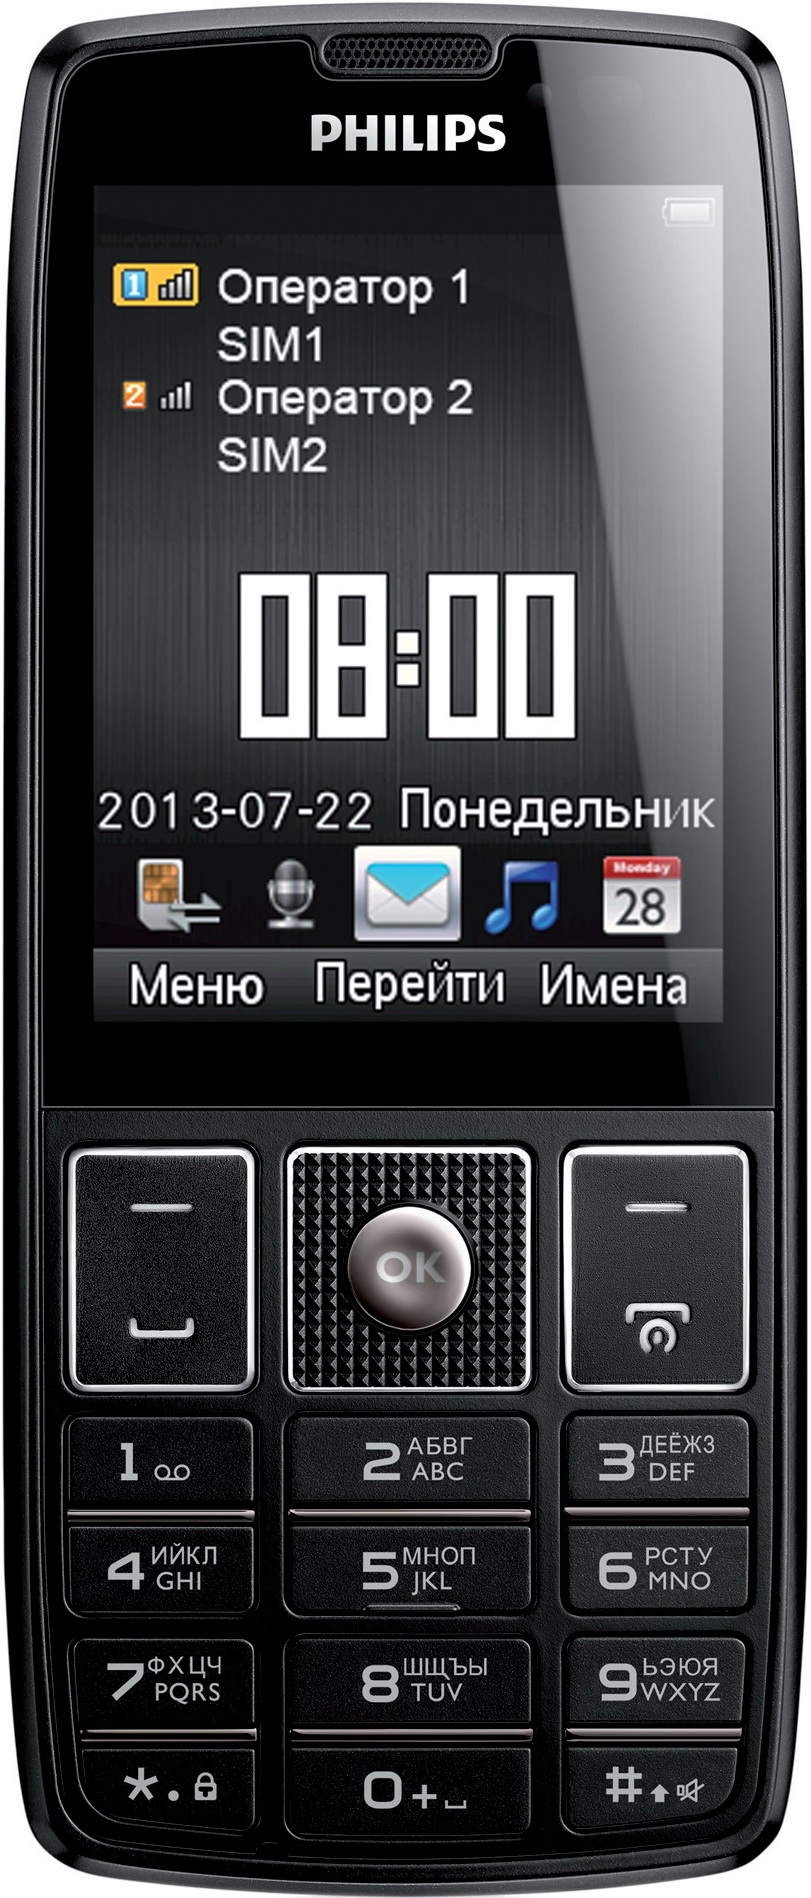 Филипс 5500. Philips Xenium x5500. Телефон Philips Xenium x5500. Сотовый телефон Филипс 5500. Philips Xenium 5500.